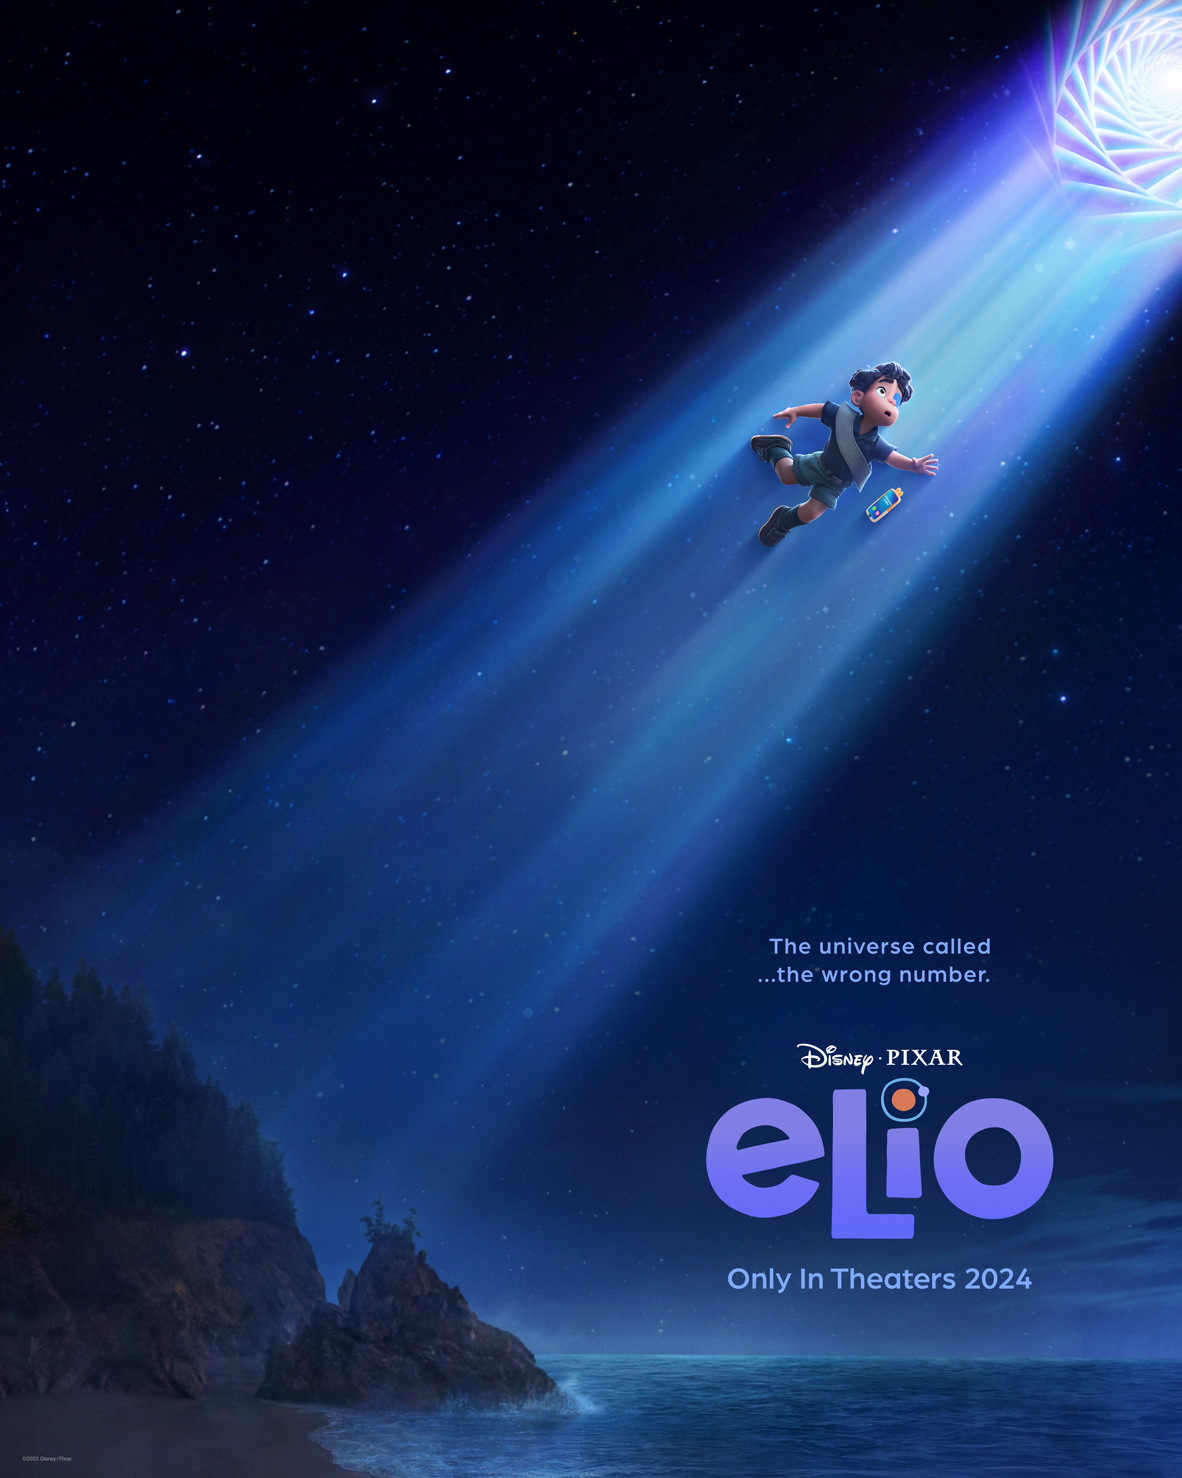 Del Revés 2 se cuela a Elio en los próximos estrenos de Pixar